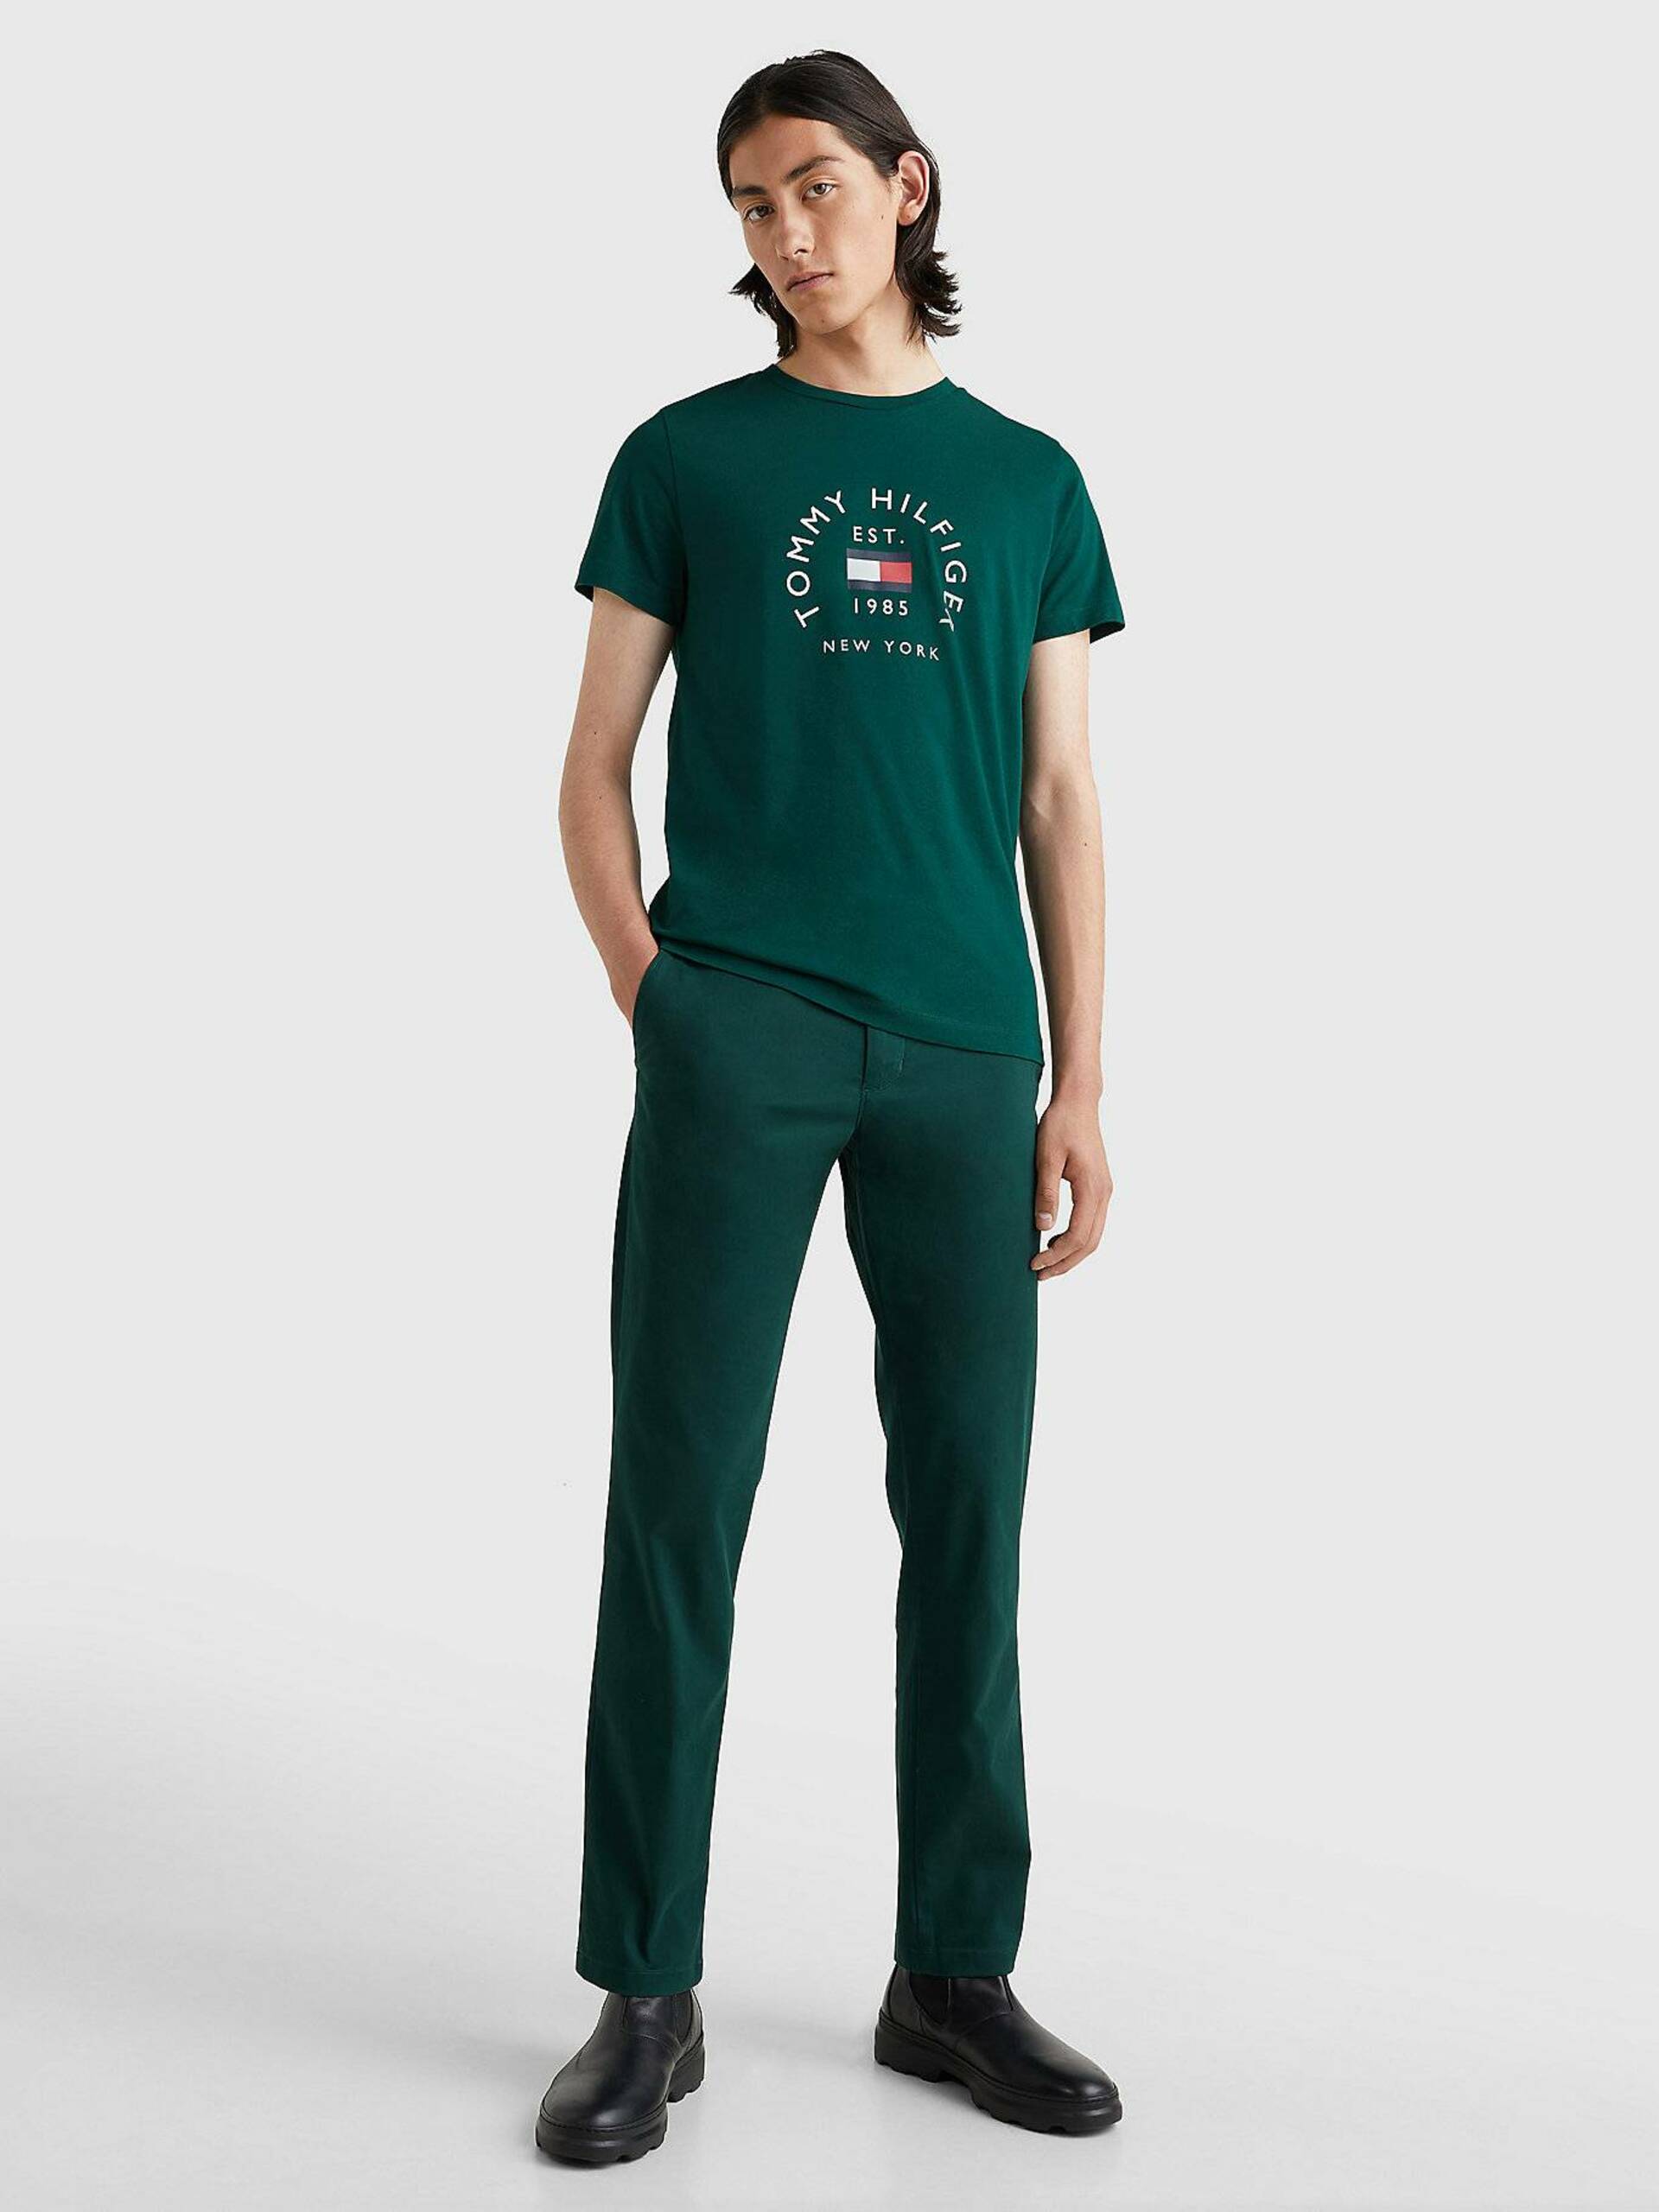 Tommy Hilfiger pánské zelené tričko - M (MBP)